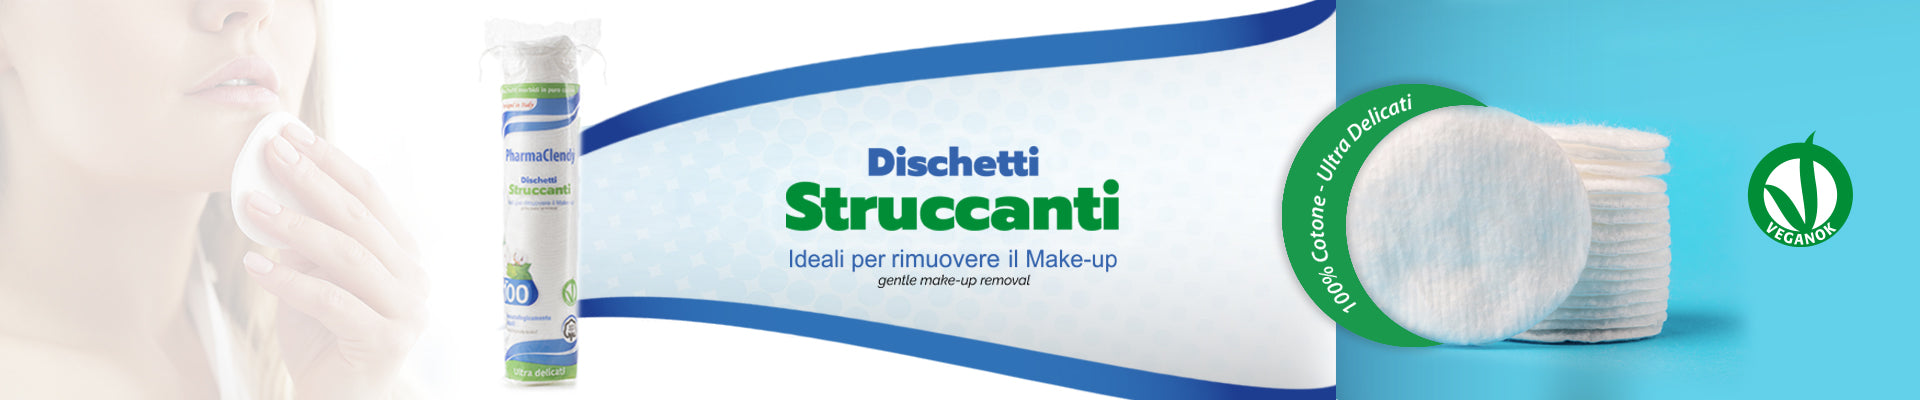 Banner_Dischetti_Struccanti